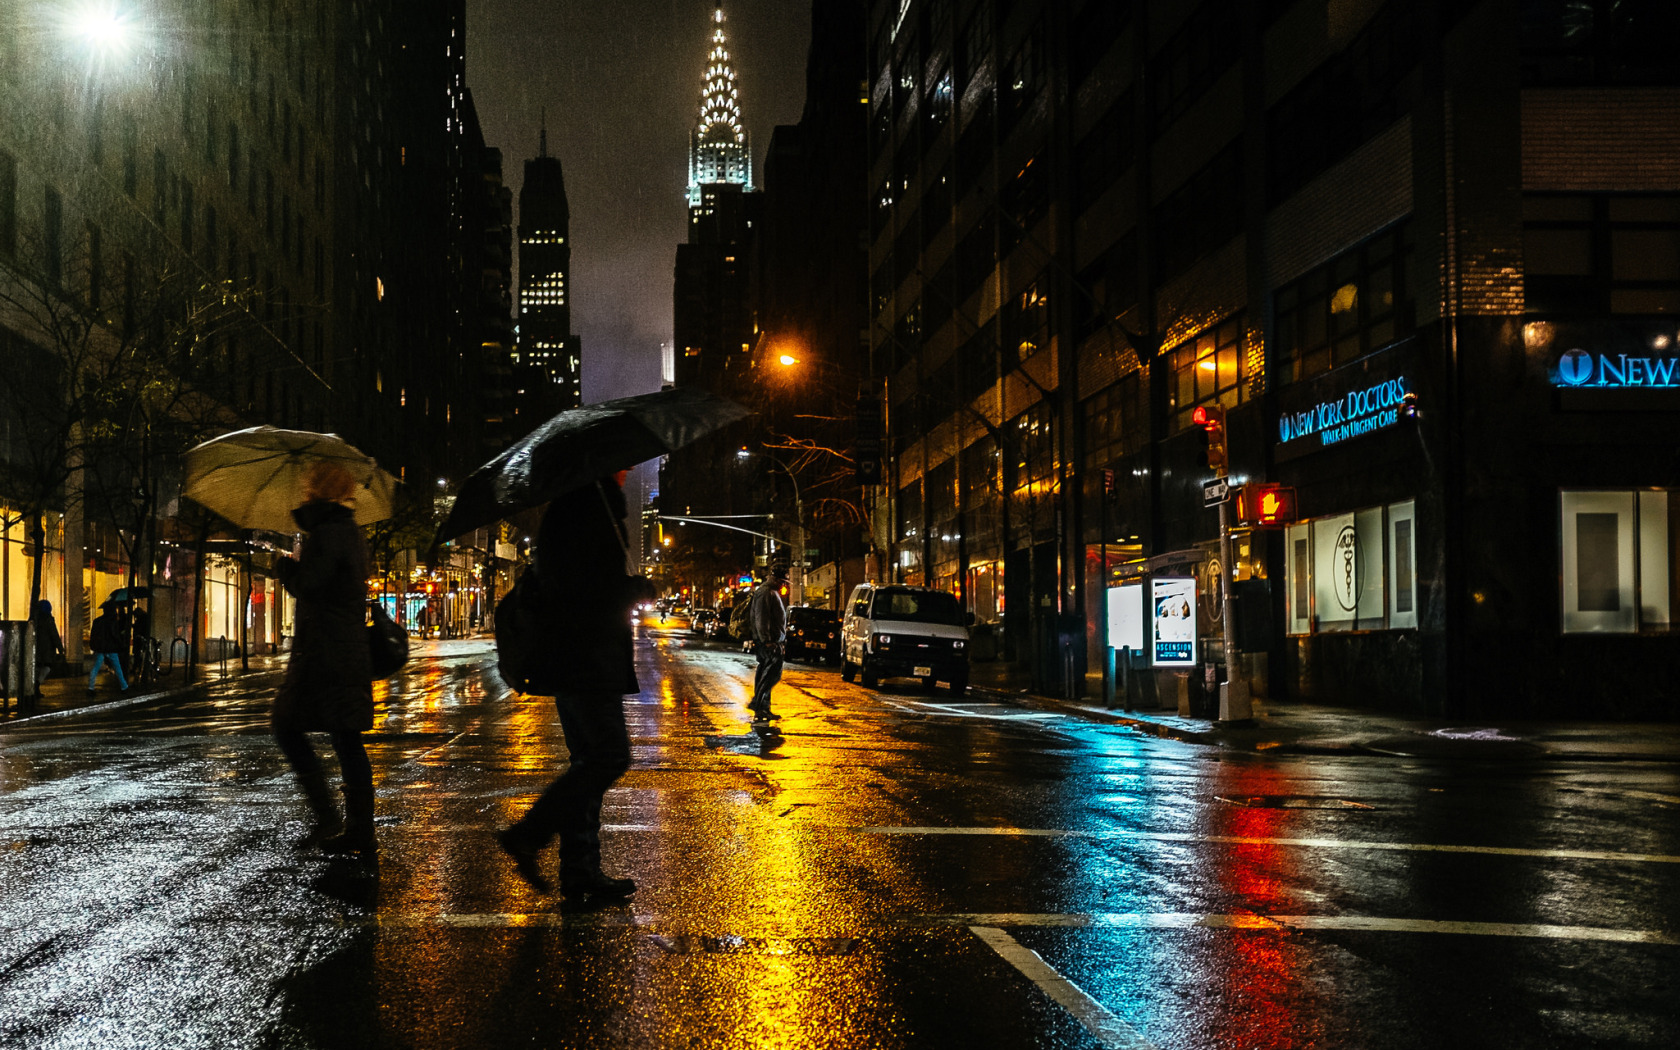 Дождь в большом городе. Нью Йорк Найт стрит. Ночной дождливый Нью_ Нью Йорк. Ливень в Нью-Йорке. Нью-Йорк улицы ночью.